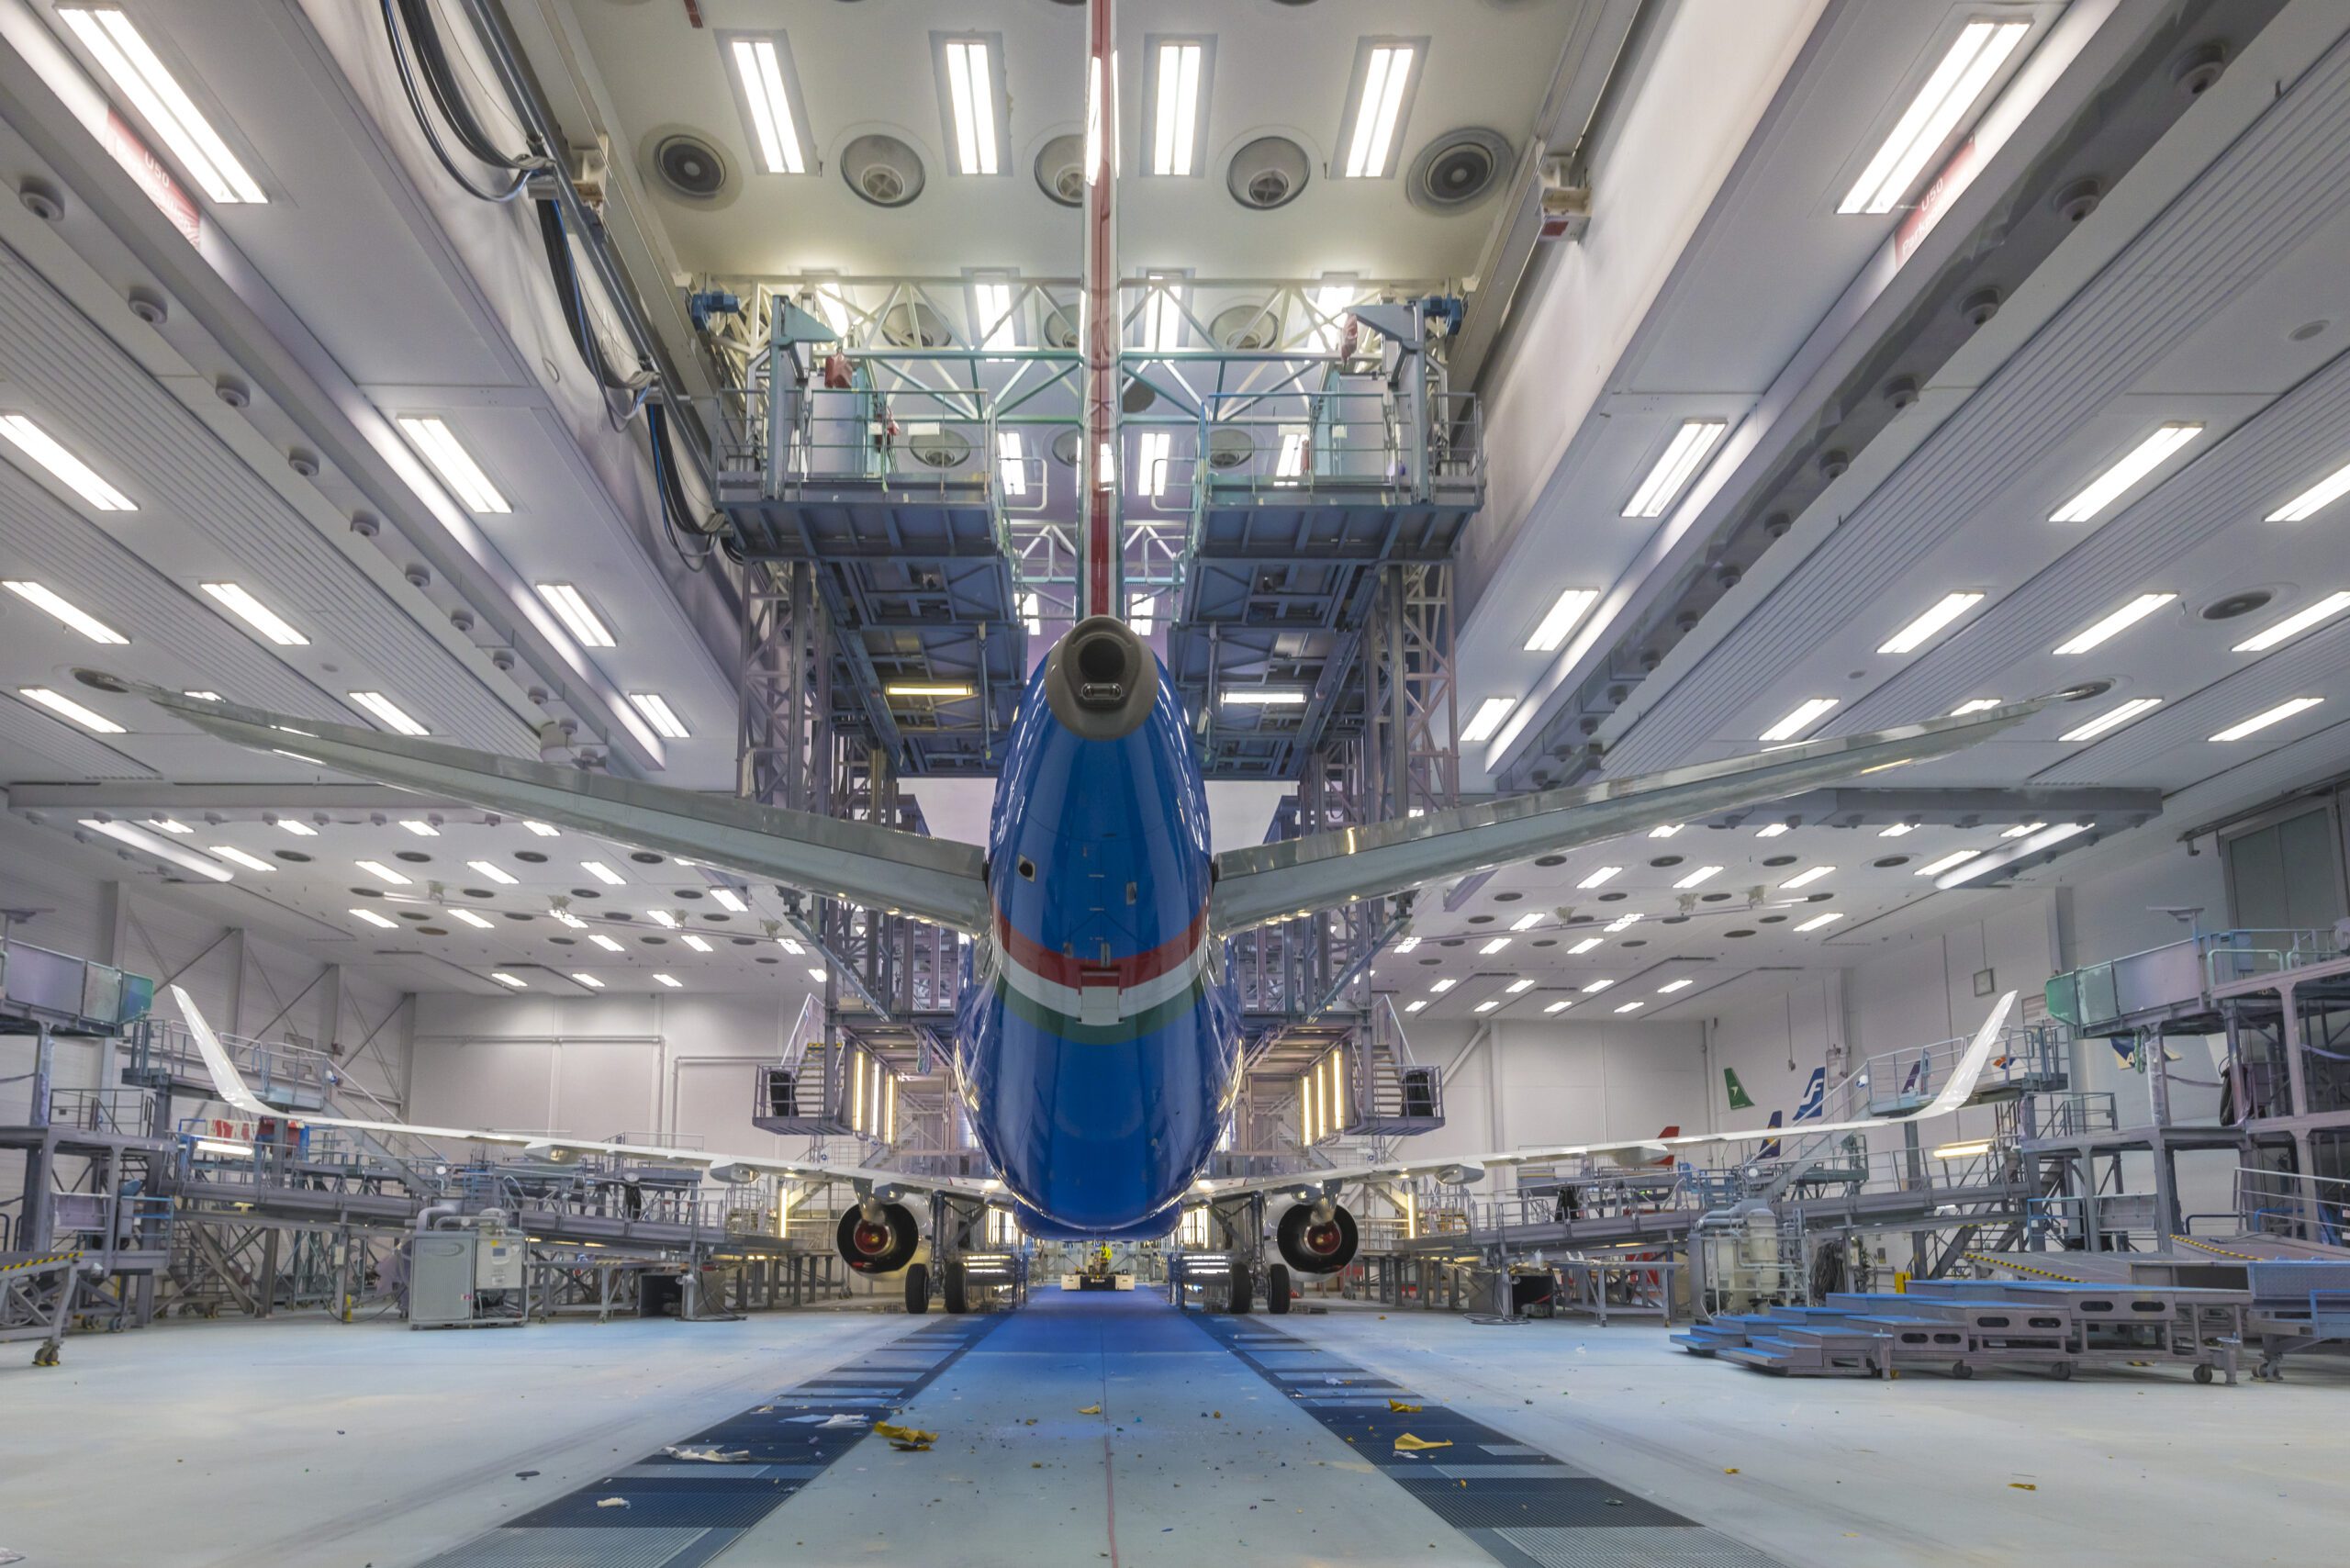 Dall’hangar Airbus spunta il primo A321neo di ITA Airways: dove e quando entrerà in servizio